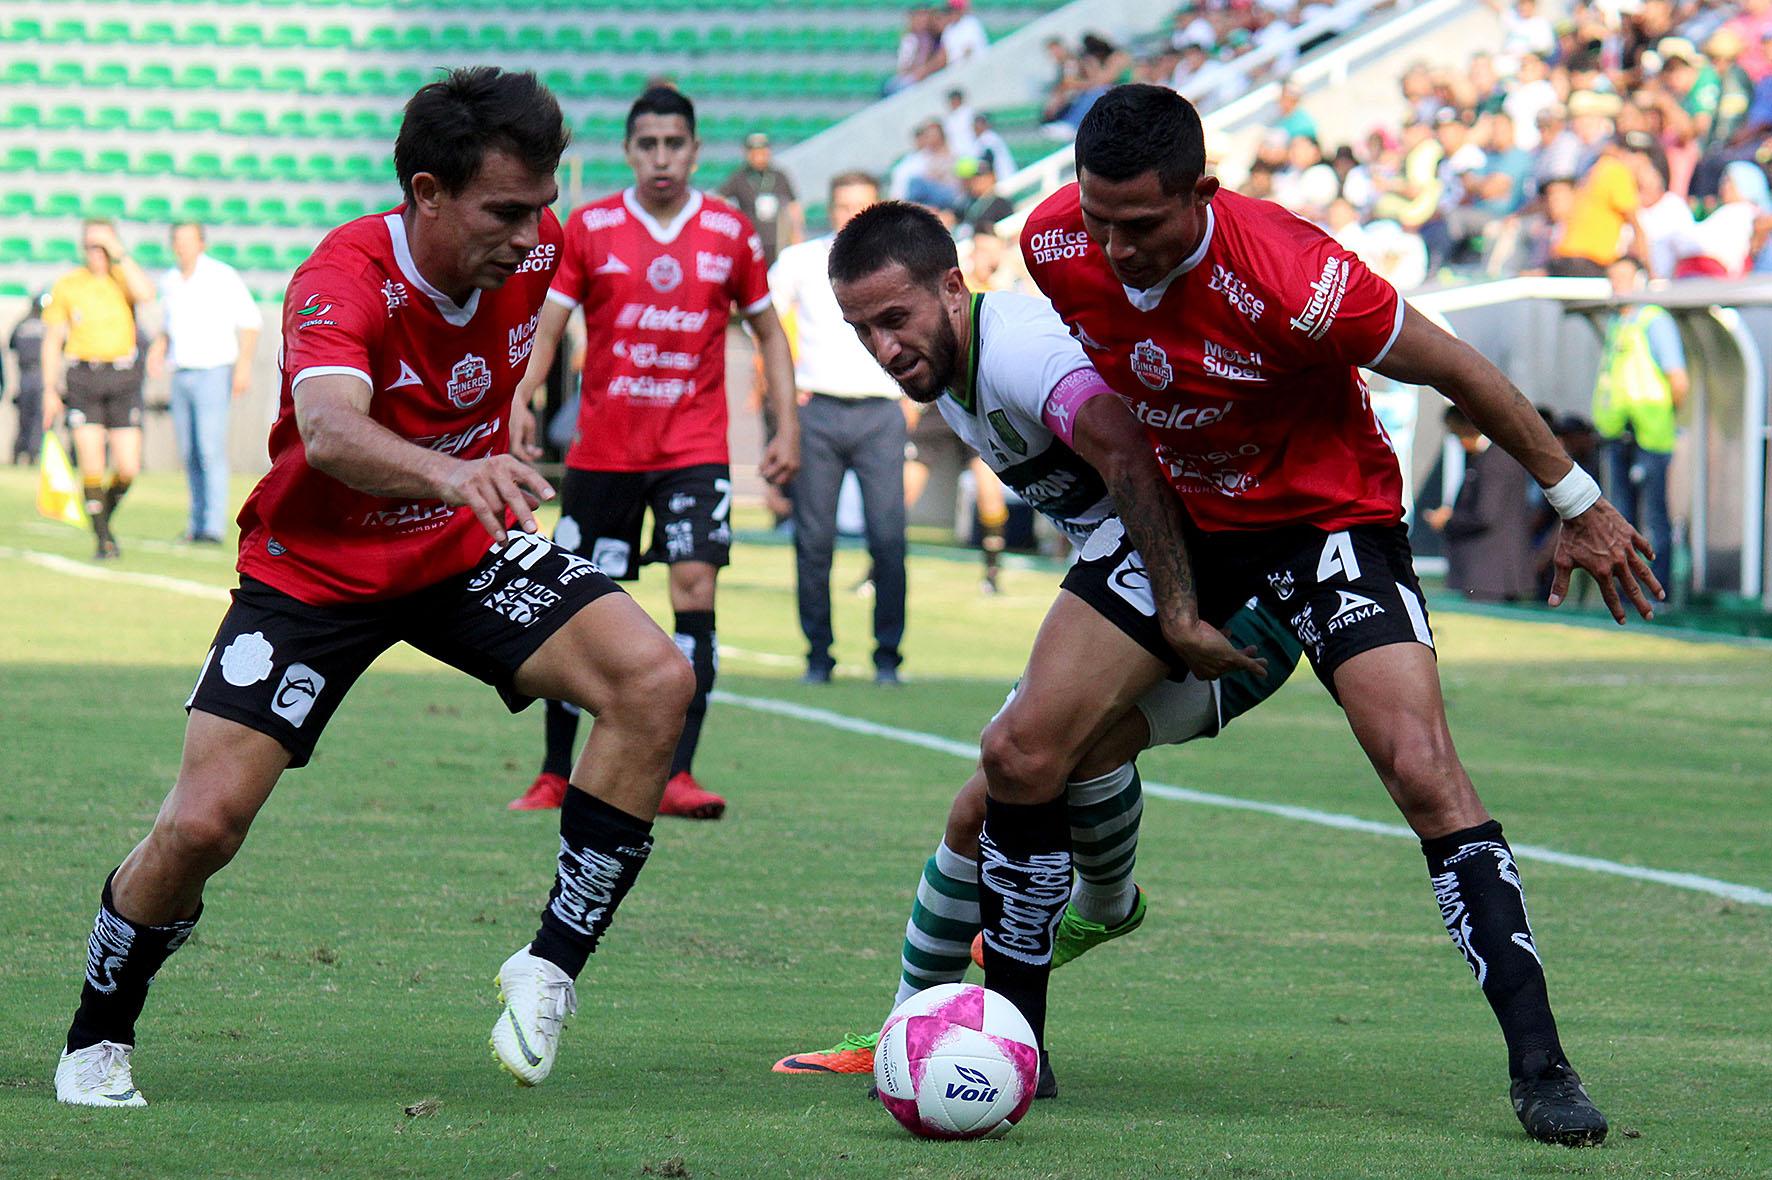 En el partido correspondiente a la Jornada 13 del ASCENSO Bancomer MX, el Atlético Zacatepec estaba obligado a ganar en casa, para mantener las esperanzas de pasar a la fiesta grande, sin embargo, el equipo visitante le sacó el resultado